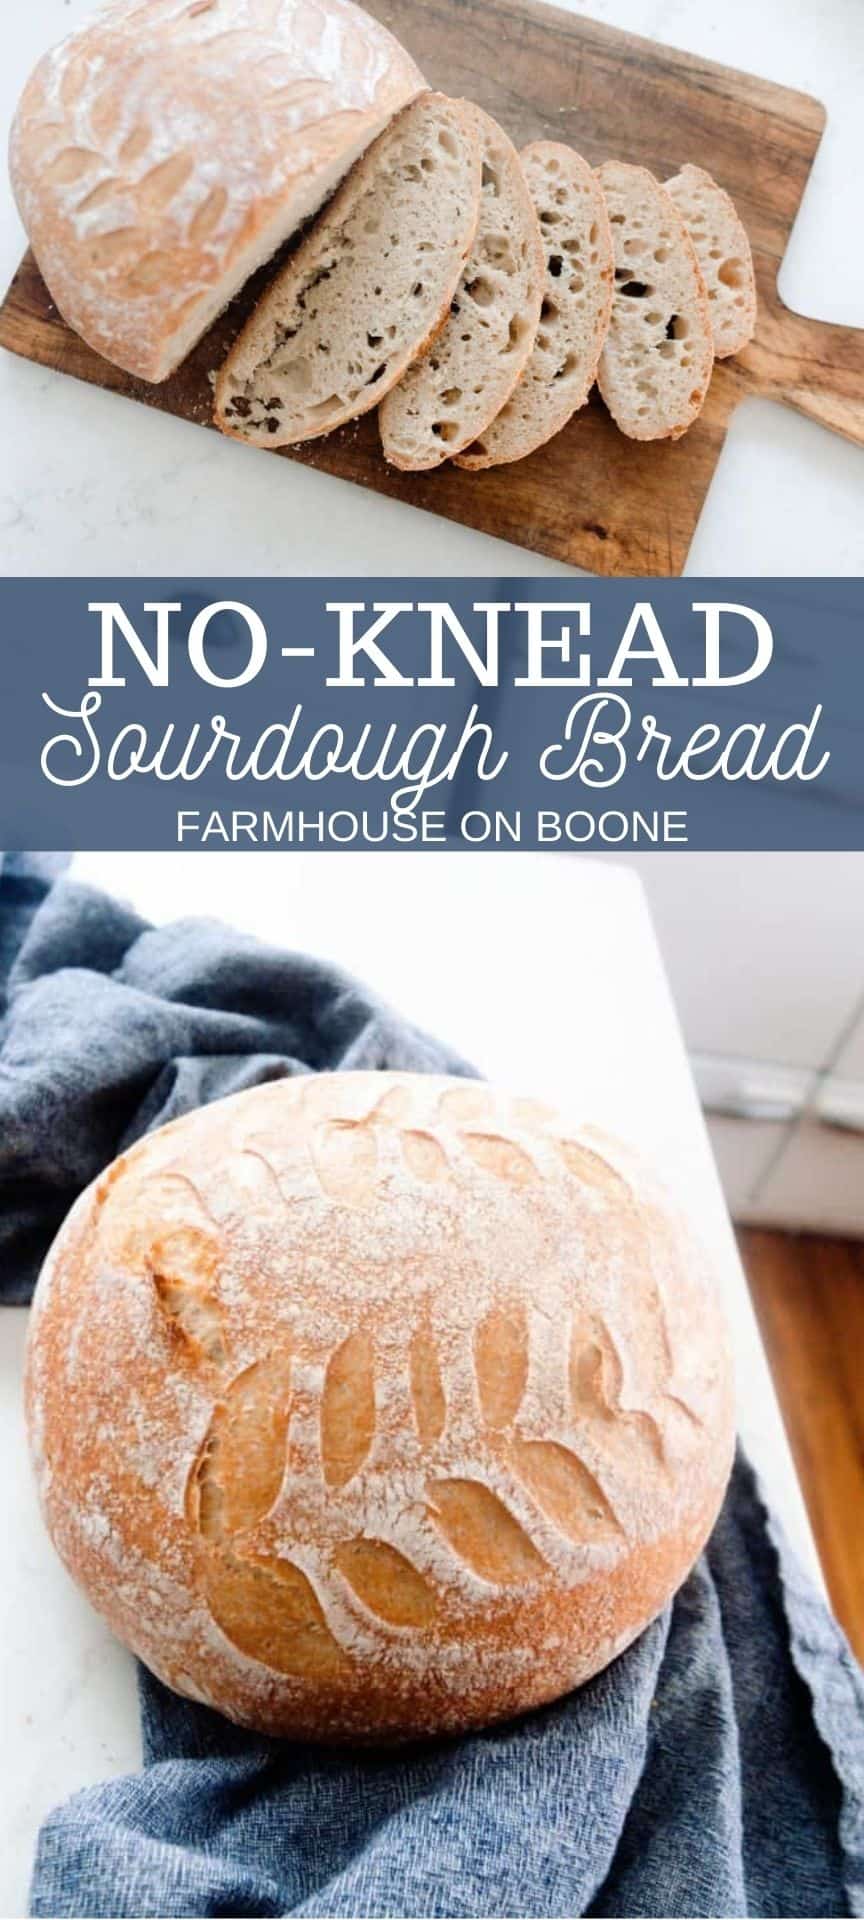 Sourdough Cheese Bread - Farmhouse on Boone